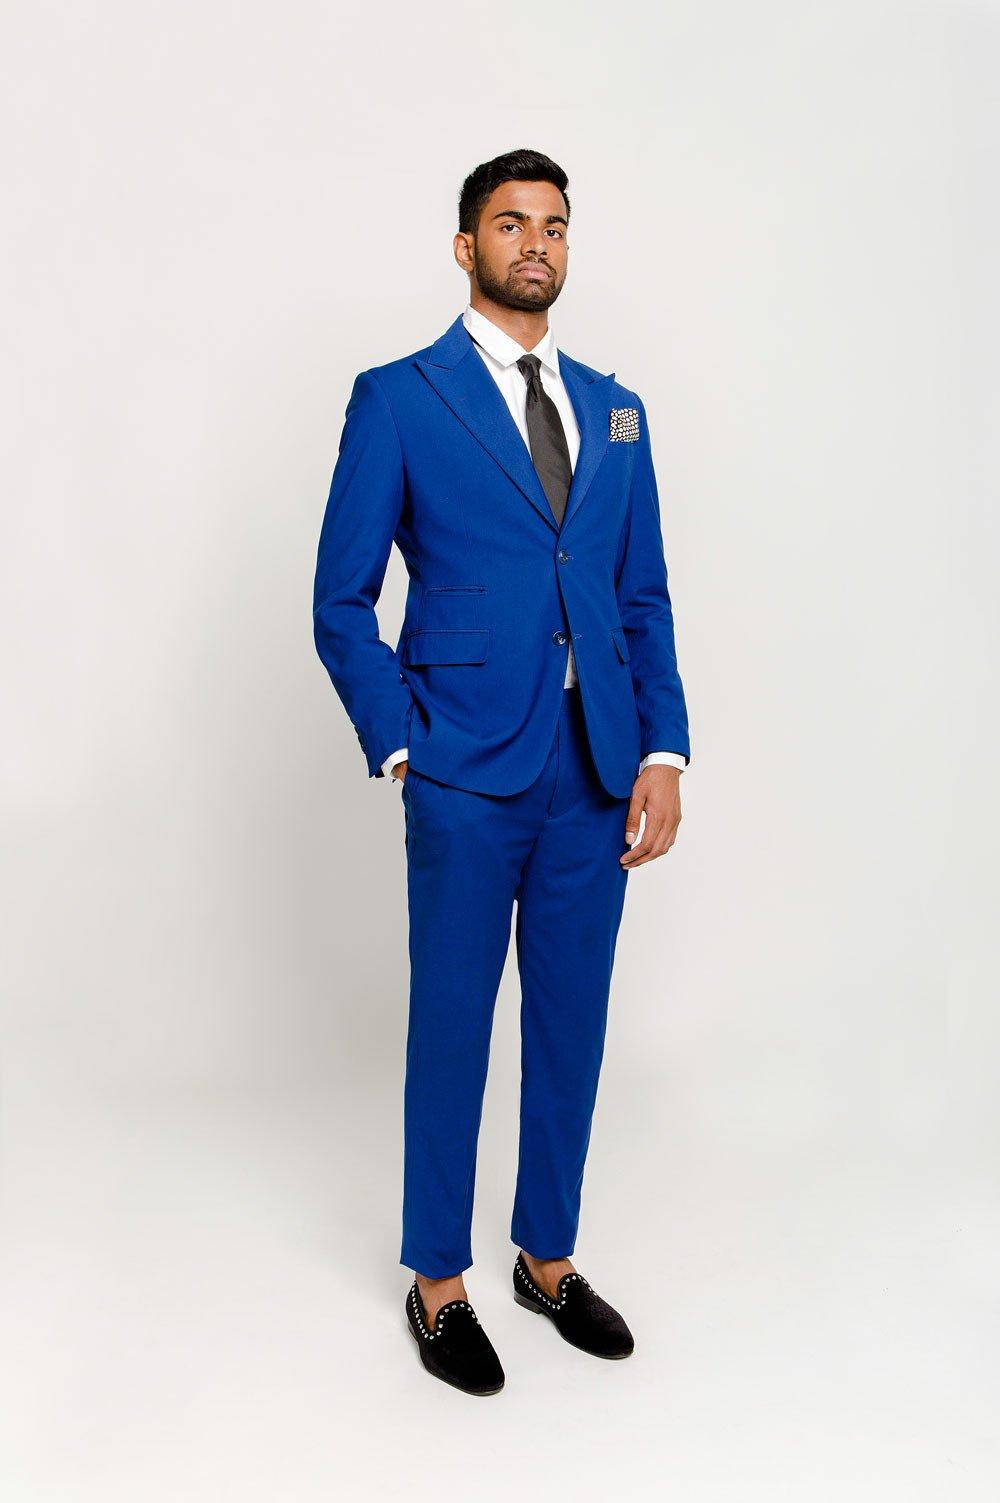 a summer groom's look with a navy suit | Blue groomsmen suits, Groom suit,  Wedding suits men